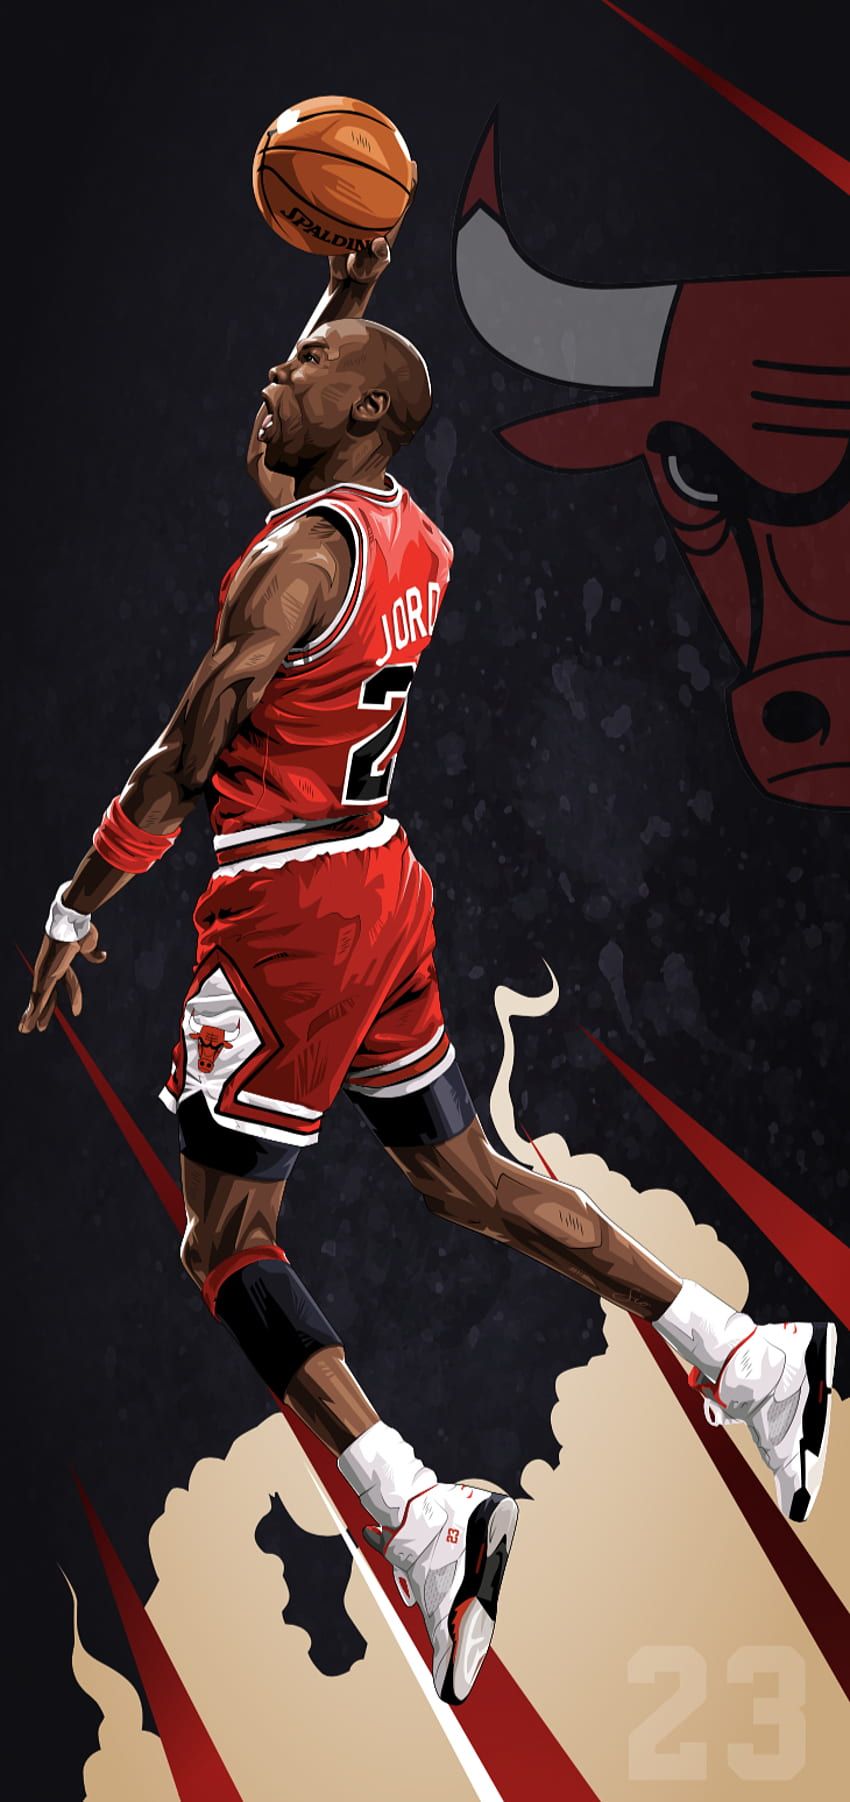 IPhone wallpaper of Michael Jordan, the famous basketball player. - Michael Jordan